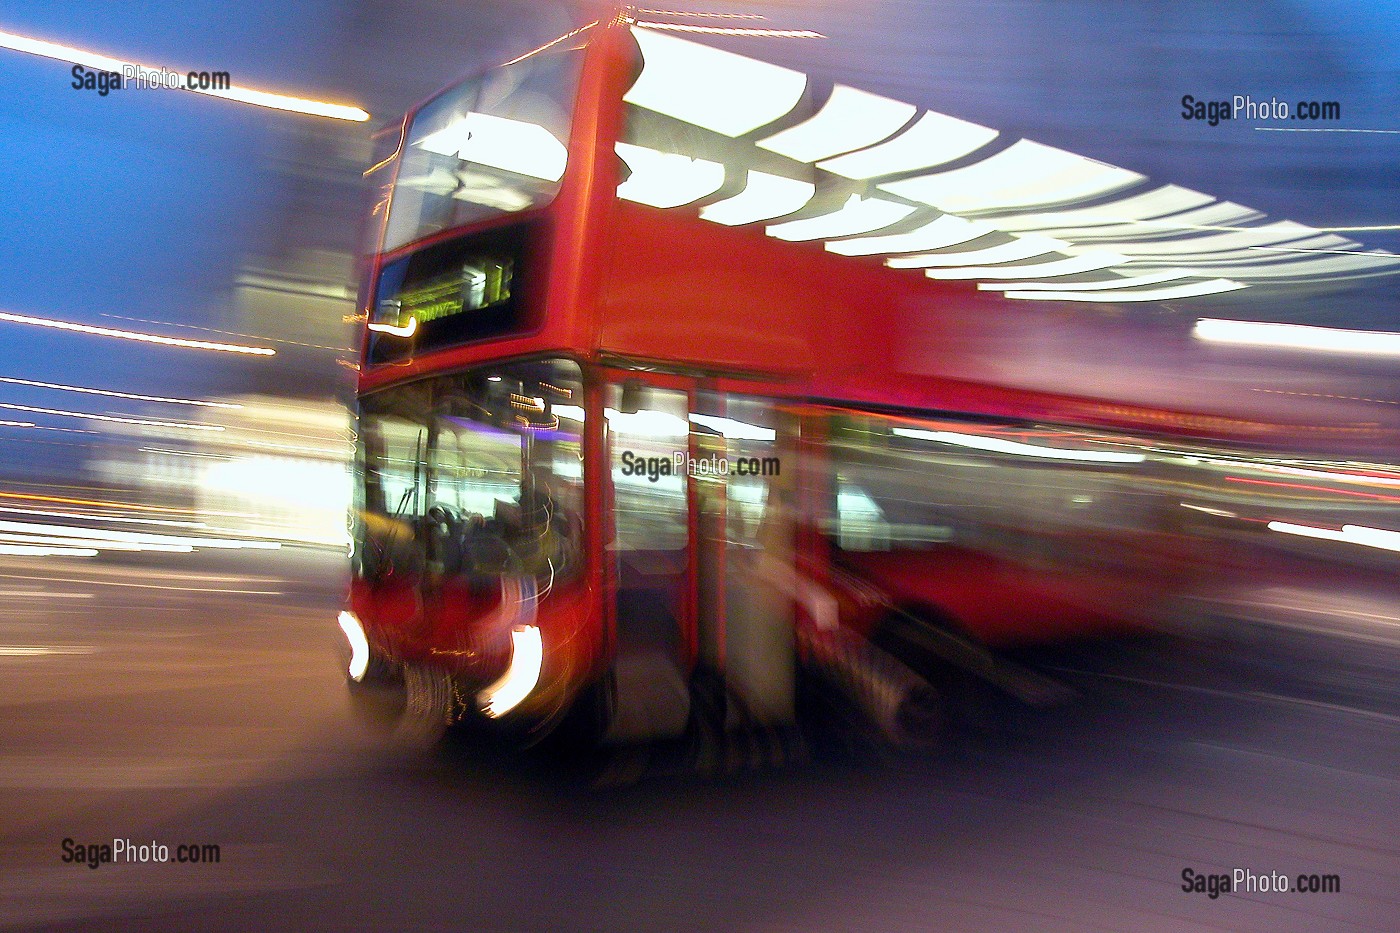 BUS ANGLAIS ROUGE (RED BUS) SYMBOLE DE L'ANGLETERRE, LONDRES, GRANDE-BRETAGNE 